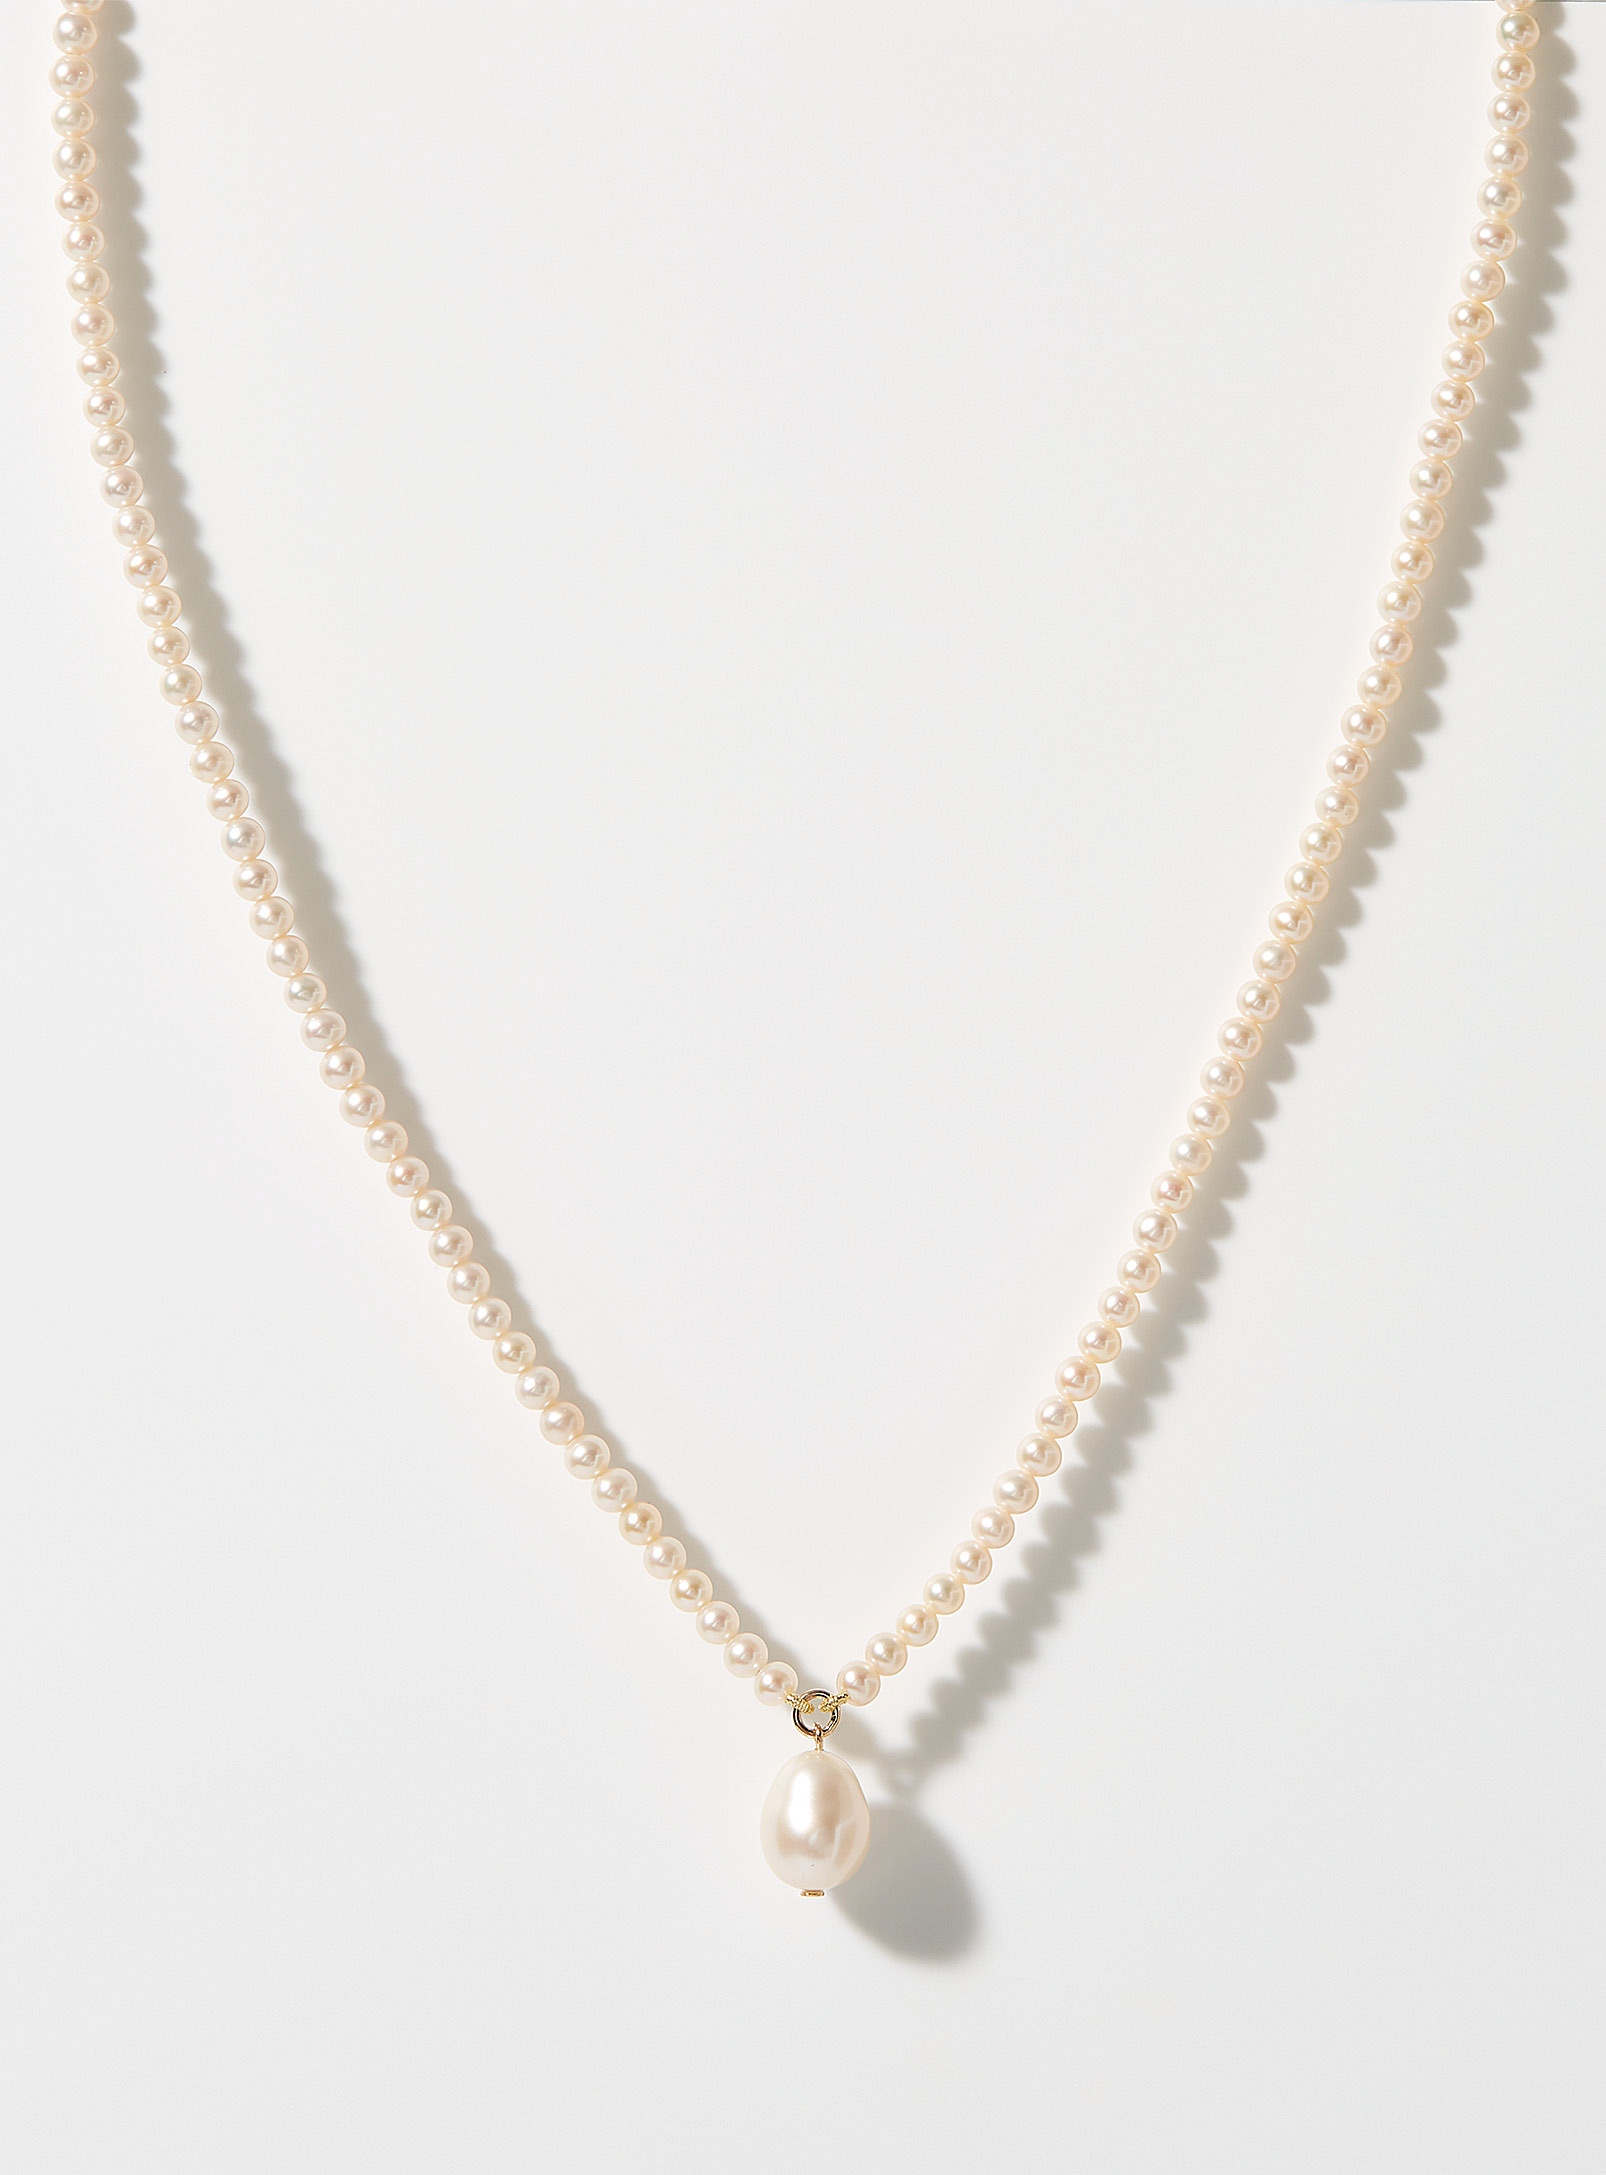 Poppy Finch - Le collier perles nacrées